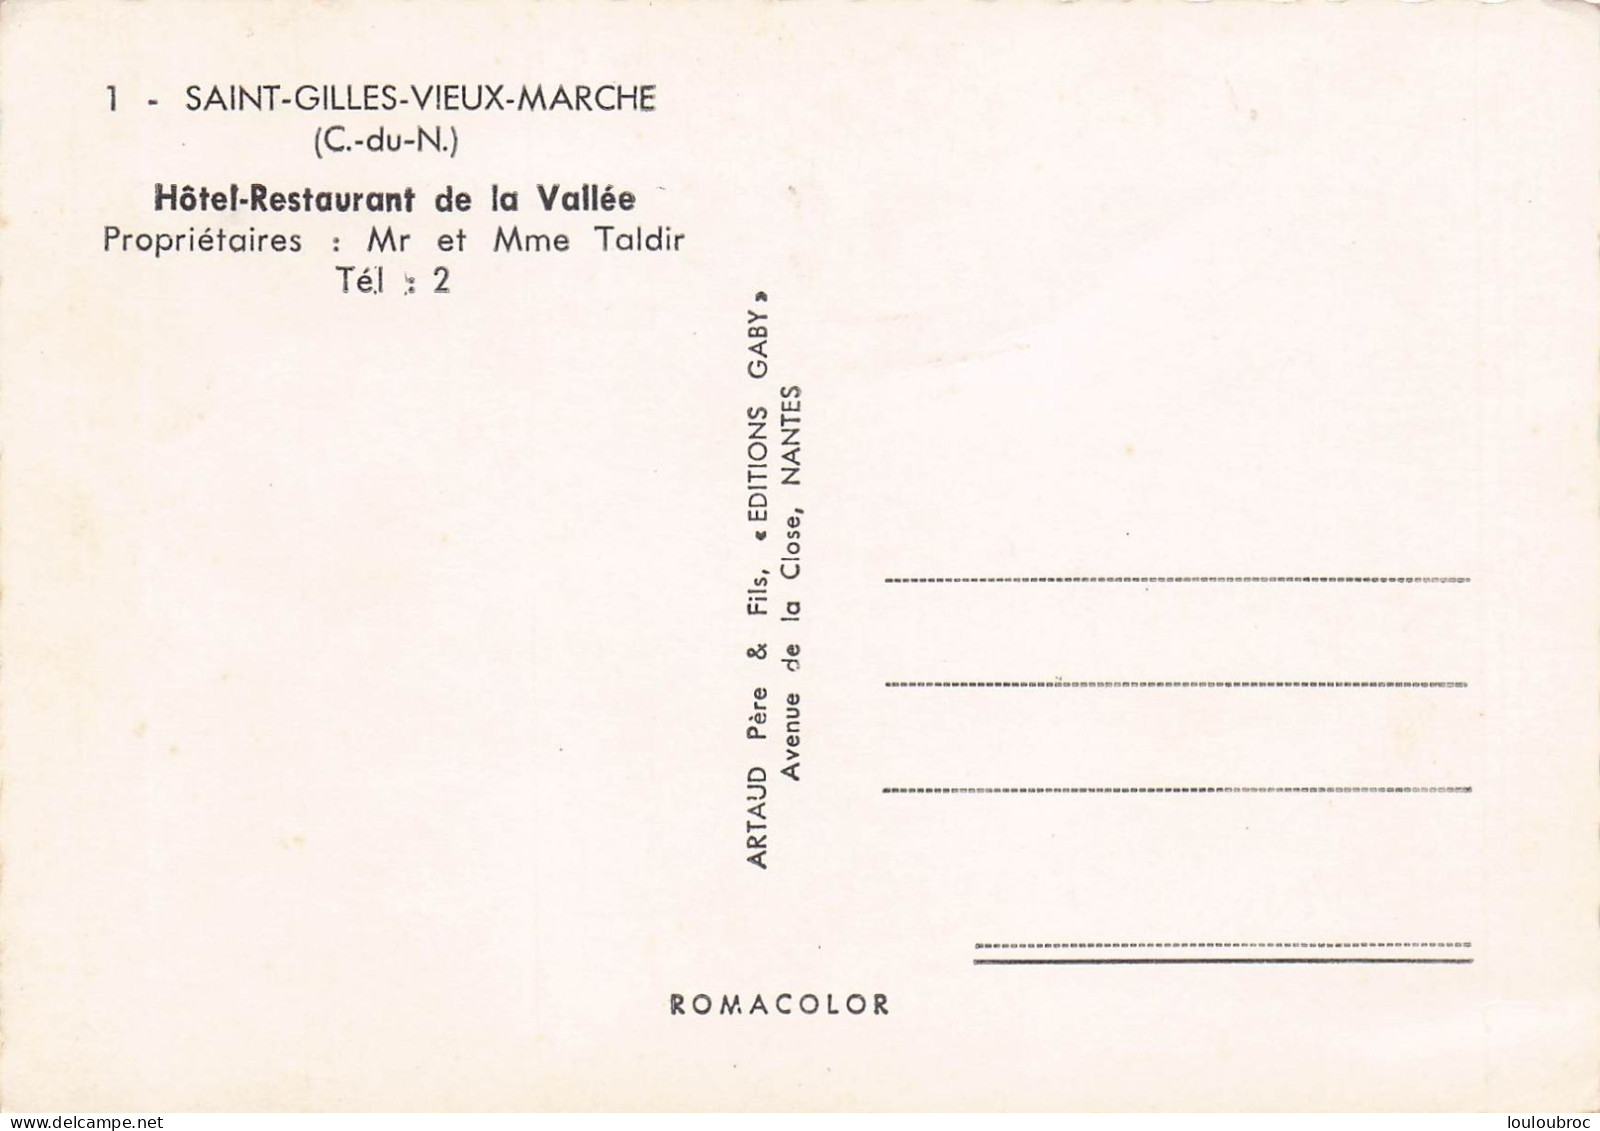 SAINT GILLES VIEUX MARCHE HOTEL RESTAURANT DE LA VALLEE - Saint-Gilles-Vieux-Marché